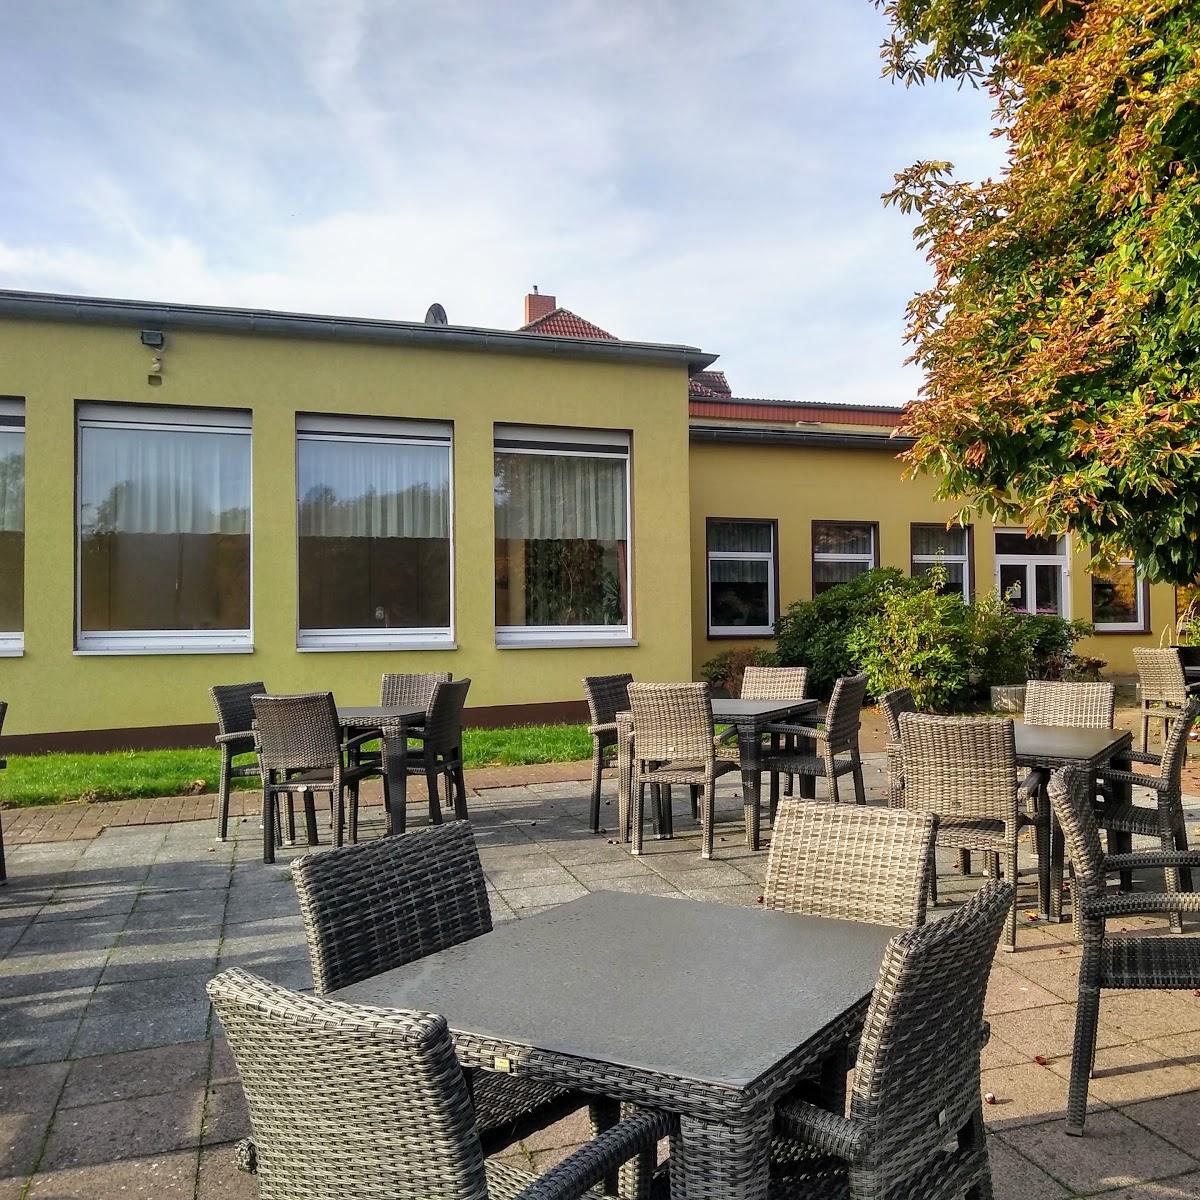 Restaurant "Der Quellenhof" in Helmstedt